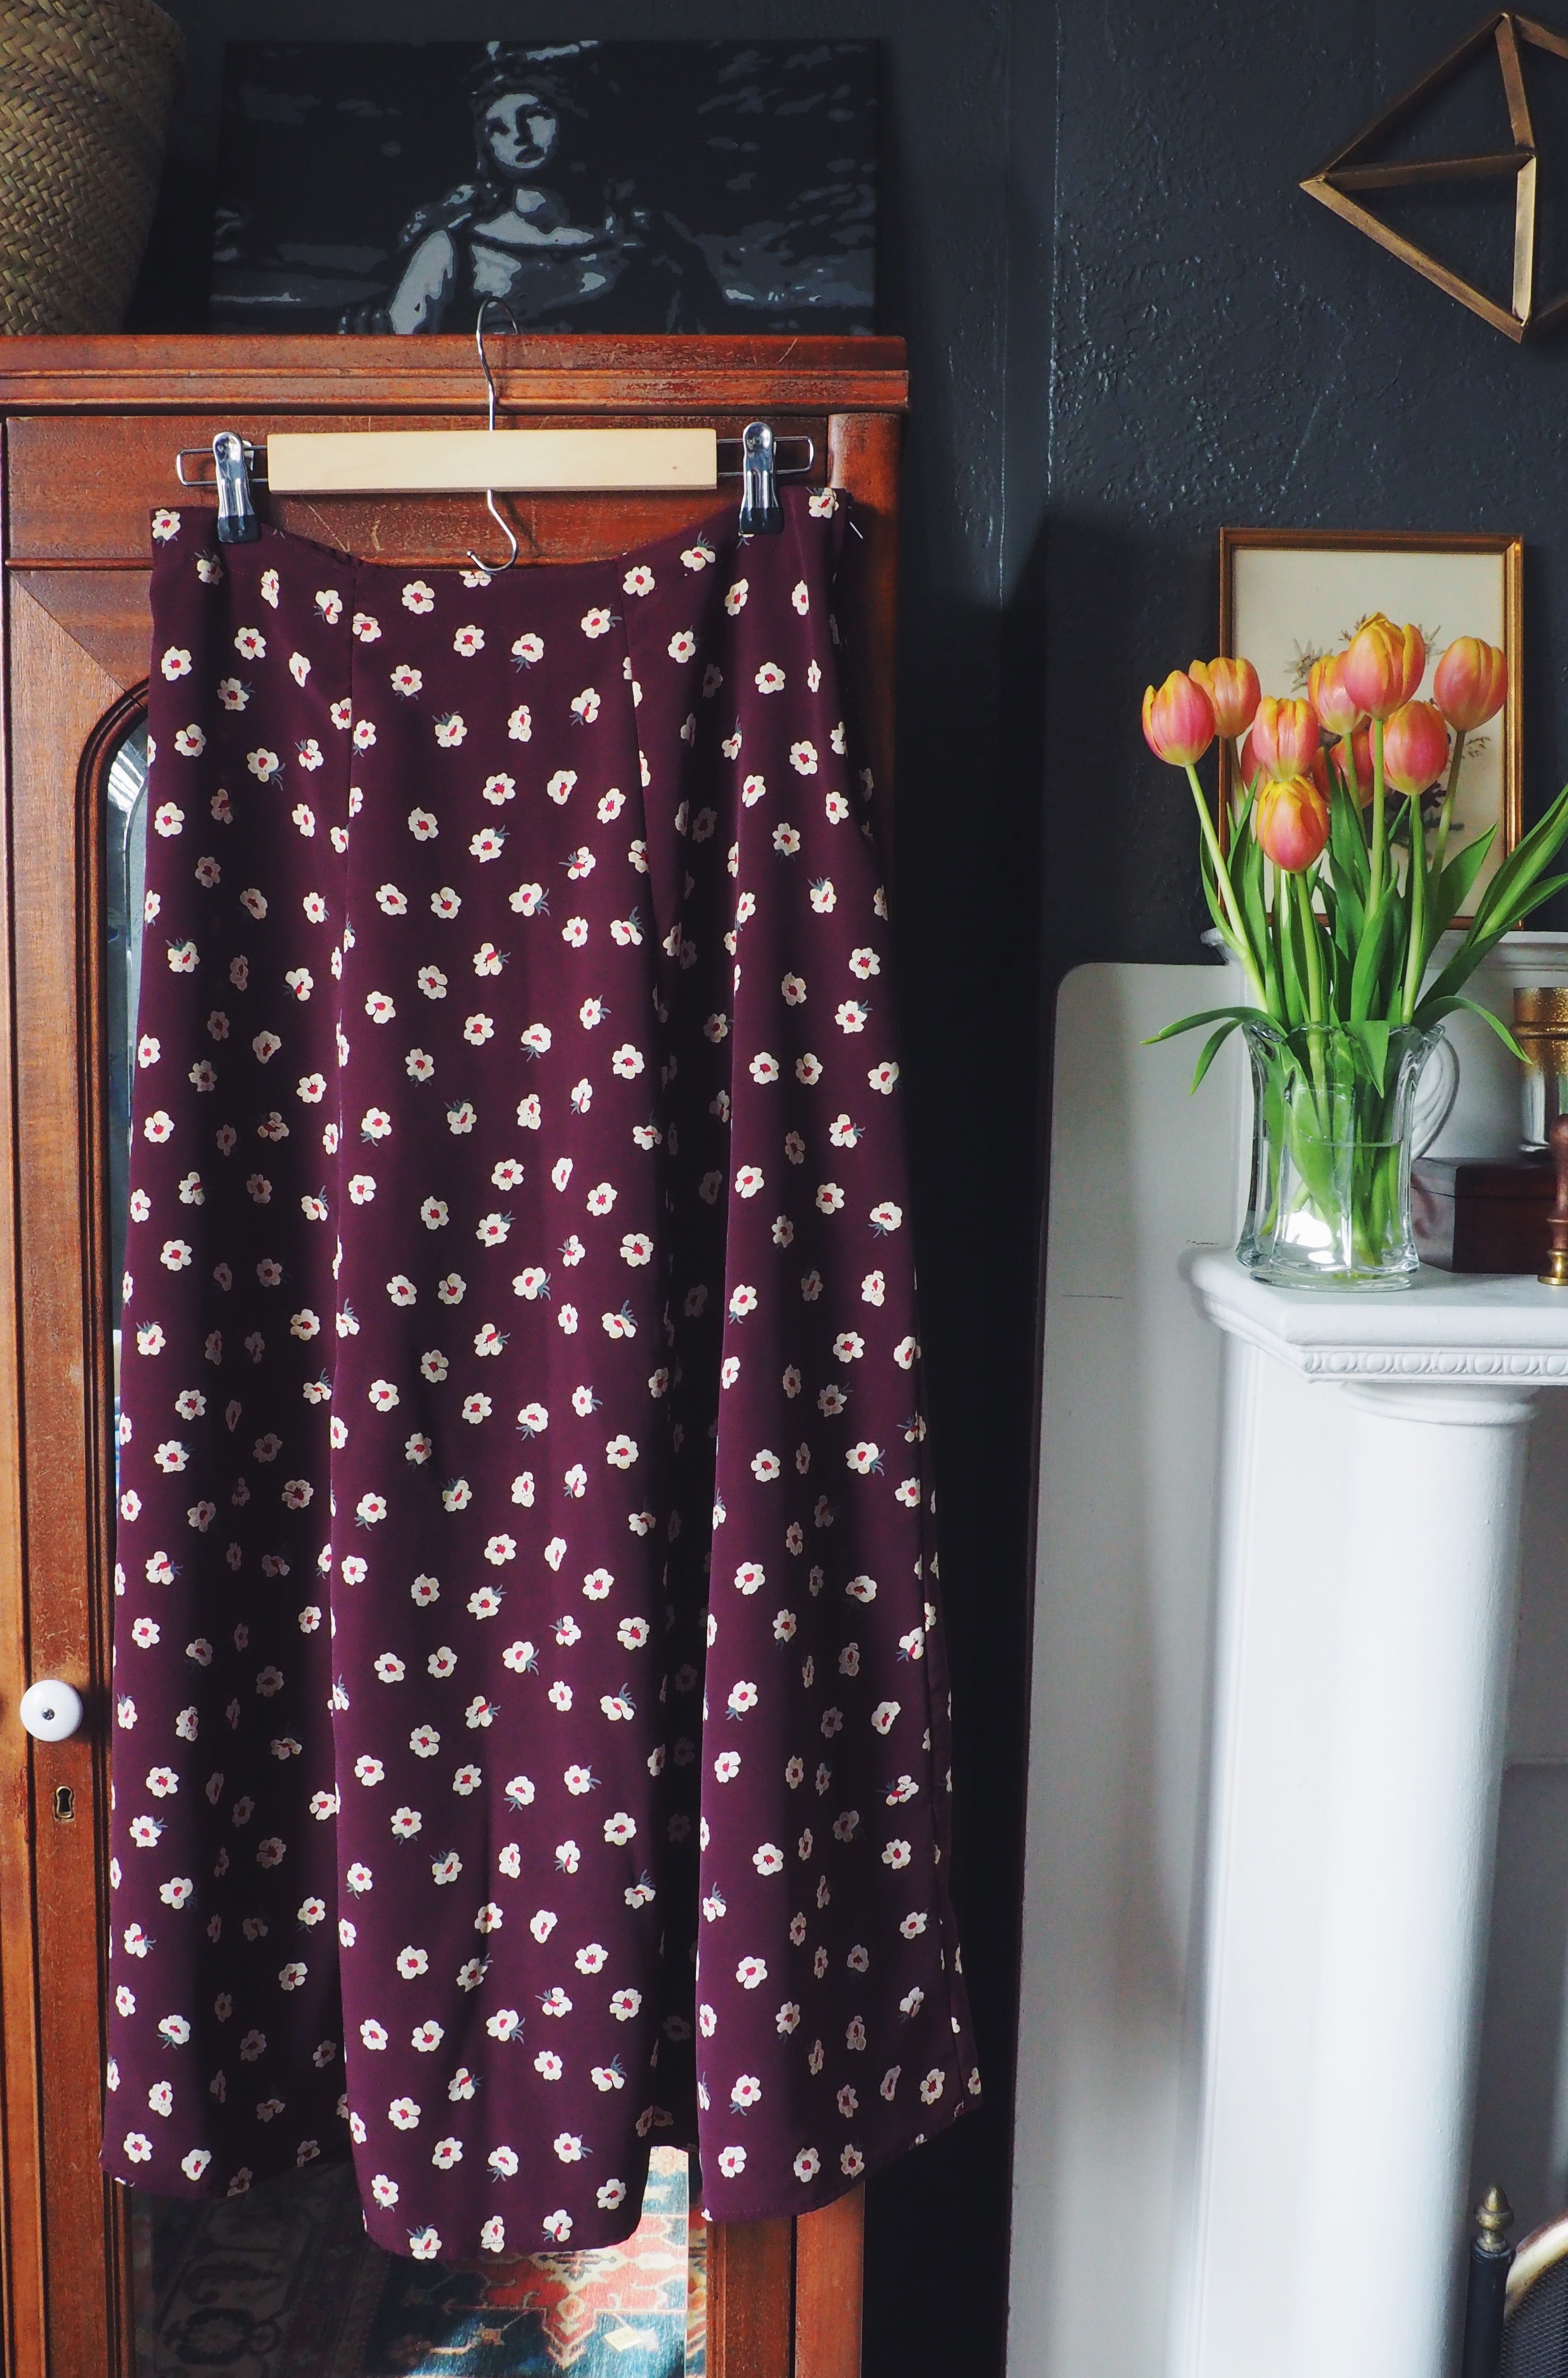 Vintage Floral Midi Skirt